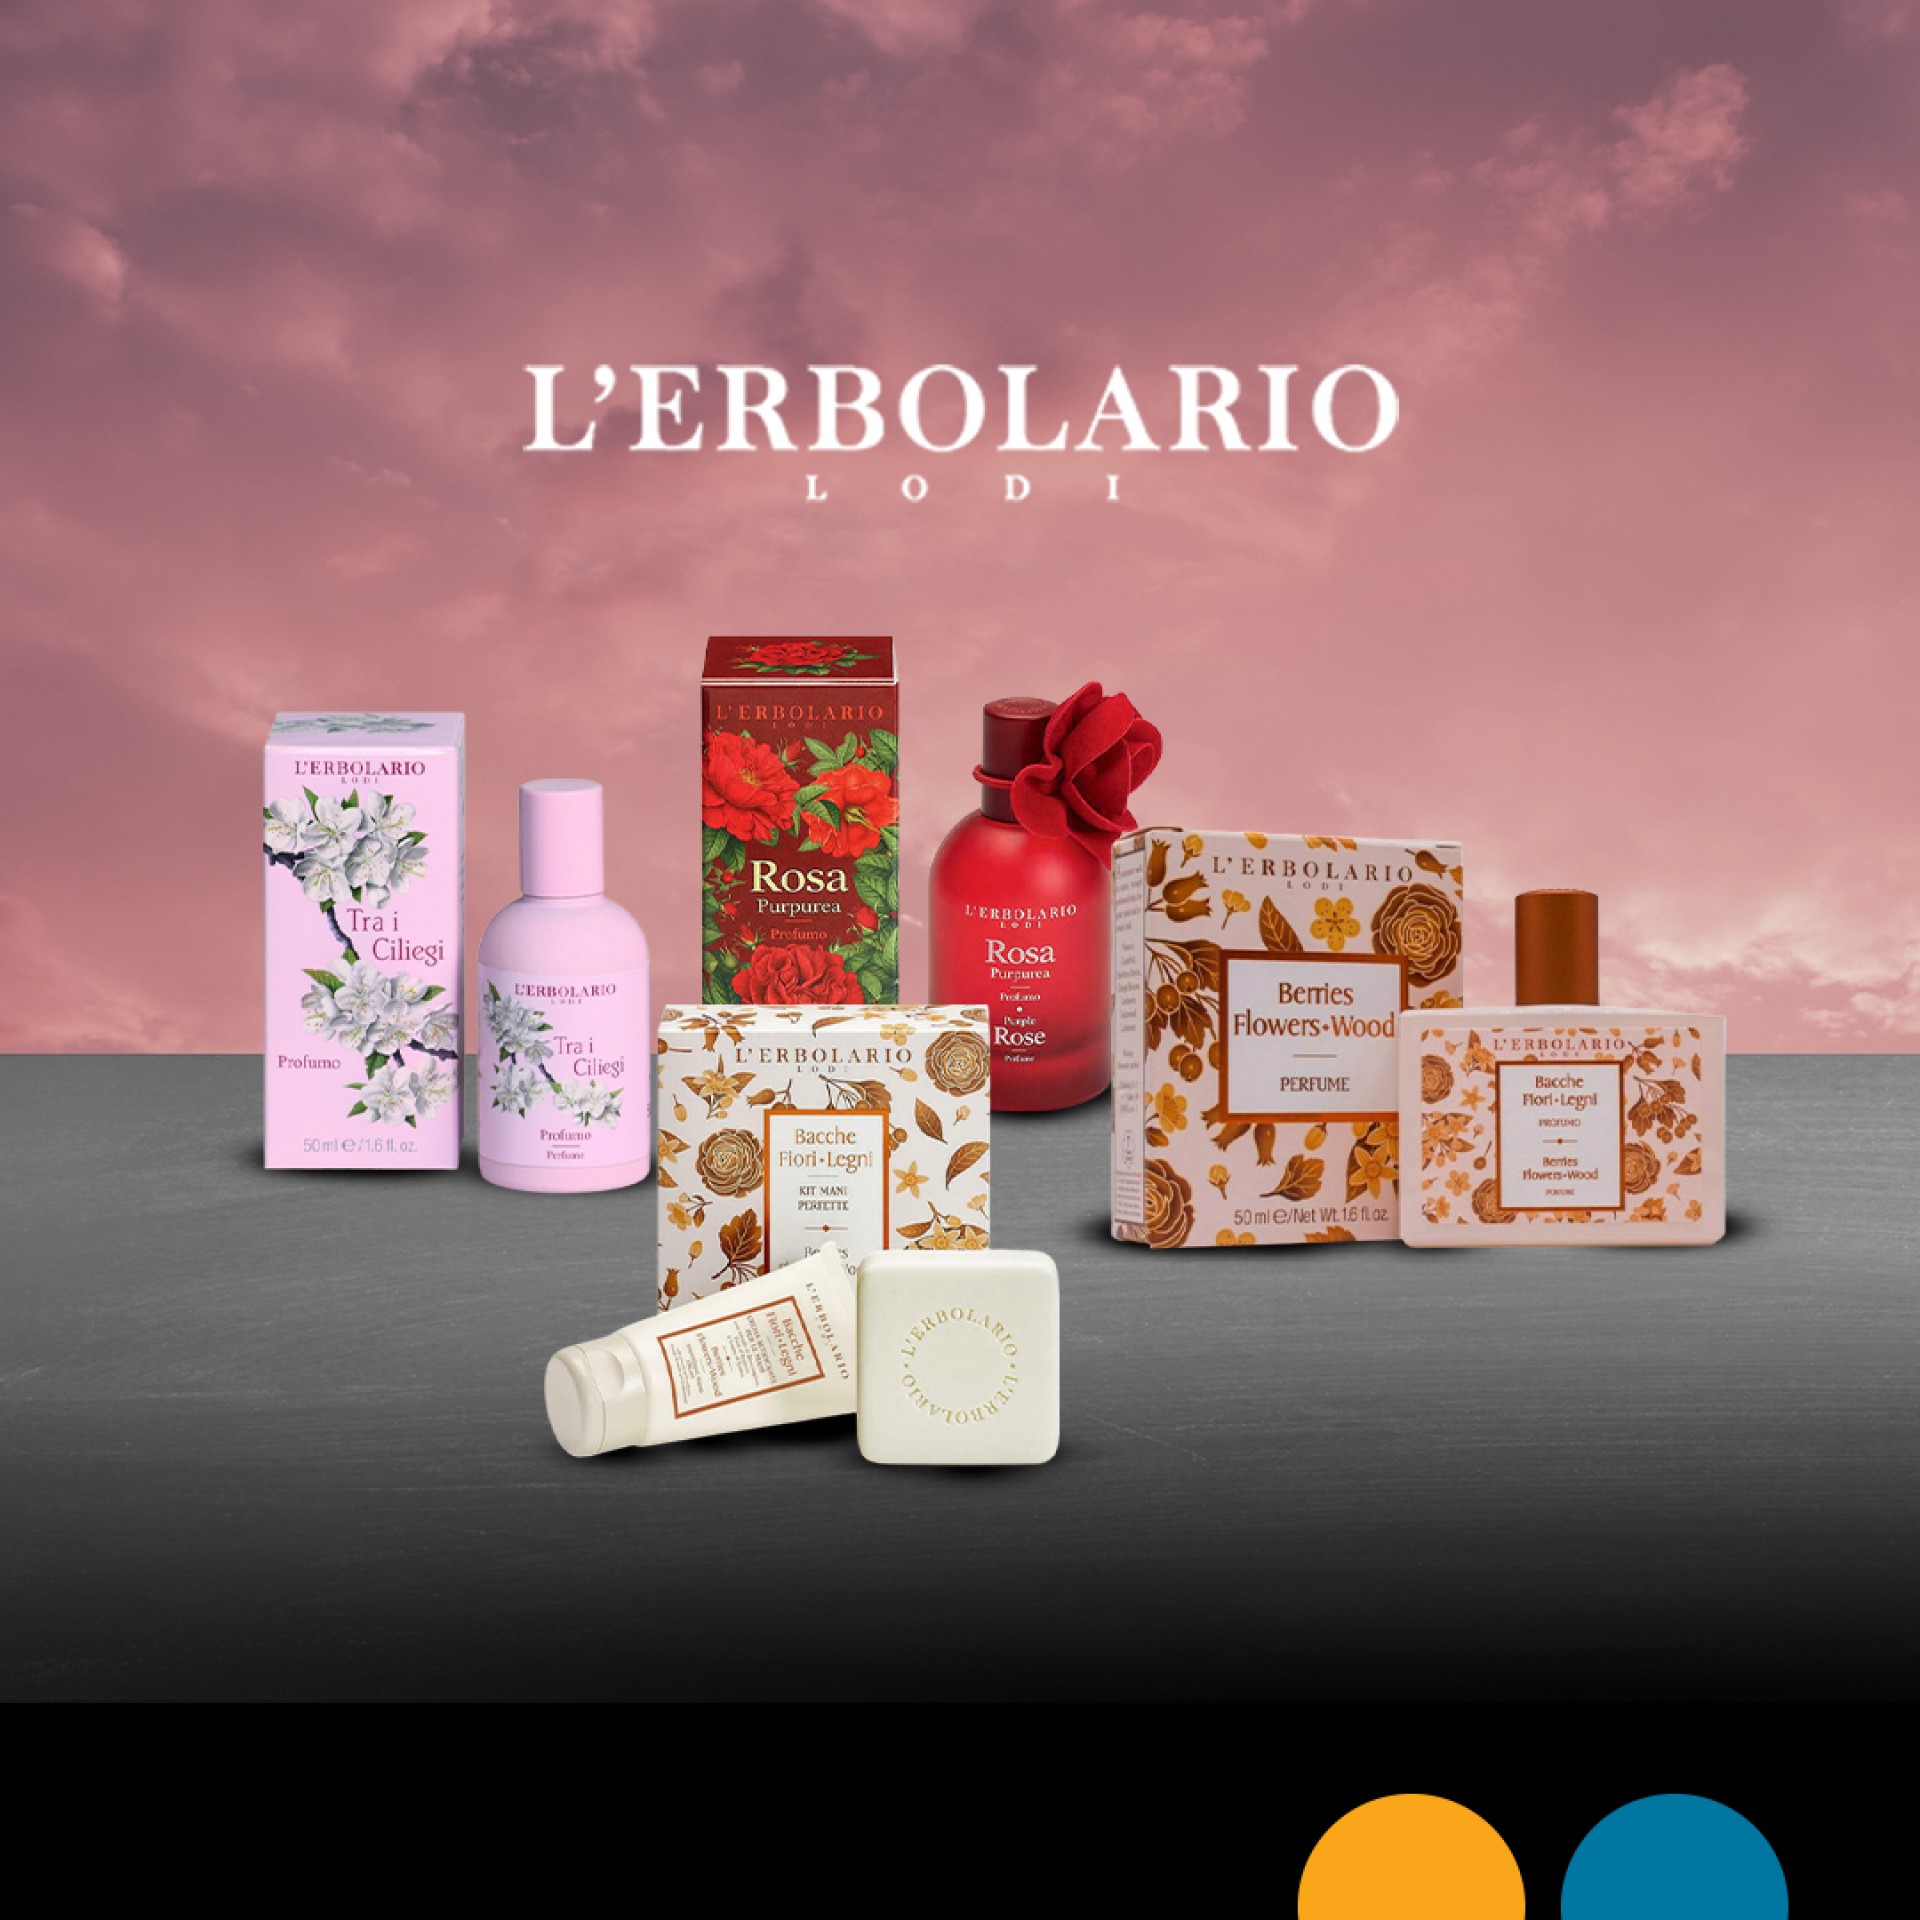 Προλάβετε όλα τα προϊόντα της LErbolario,